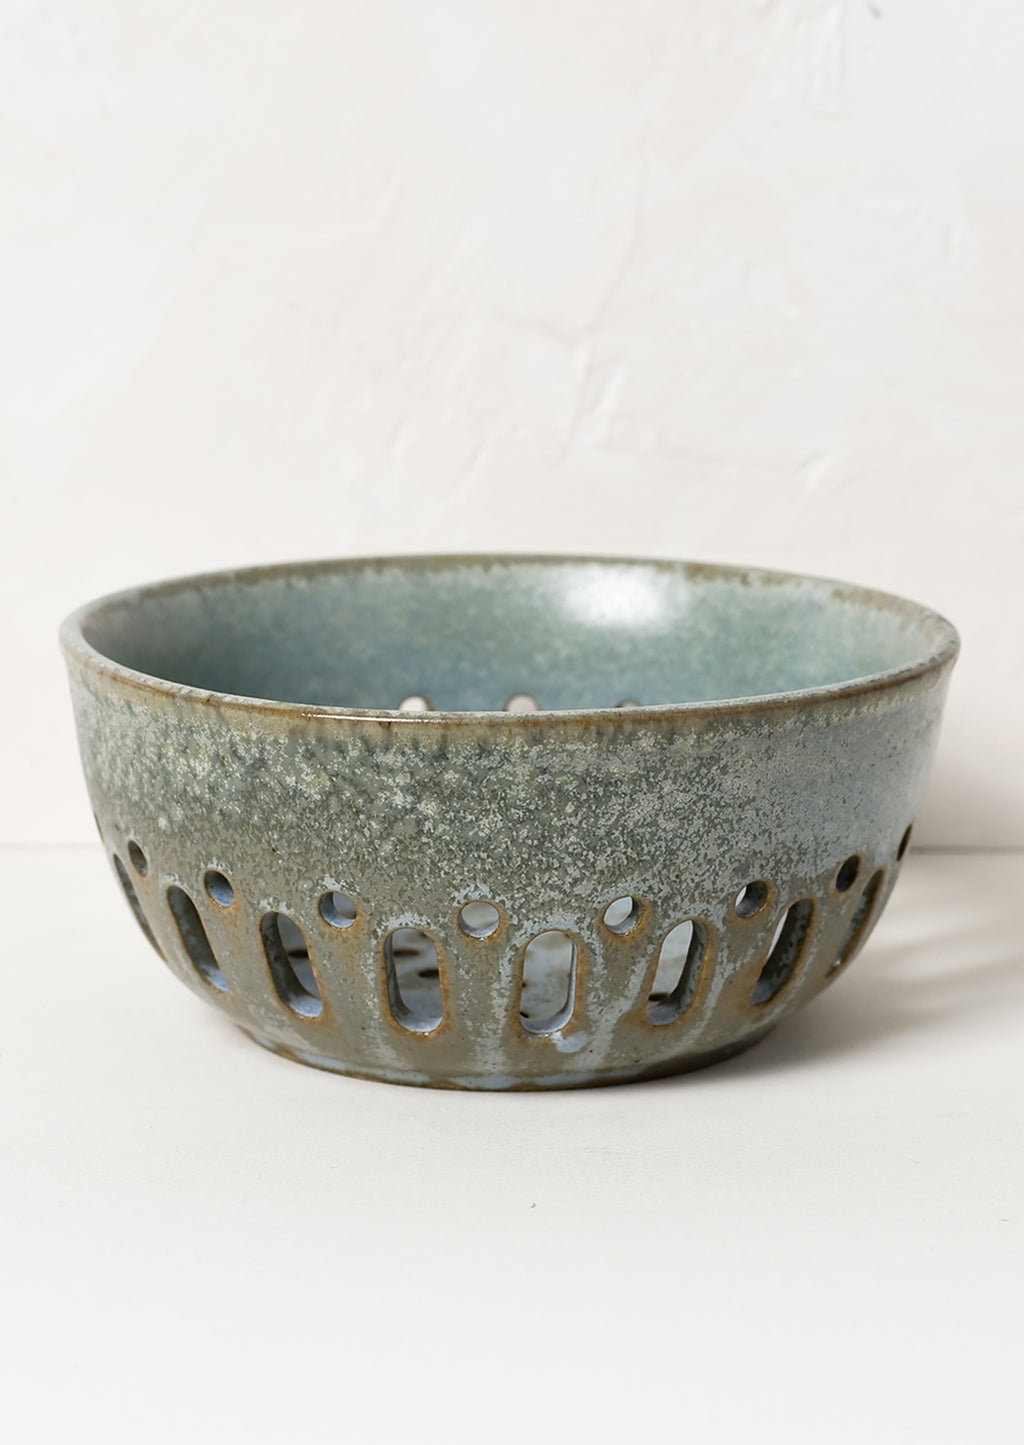 3: A ceramic berry colander in mottled blue green glaze.